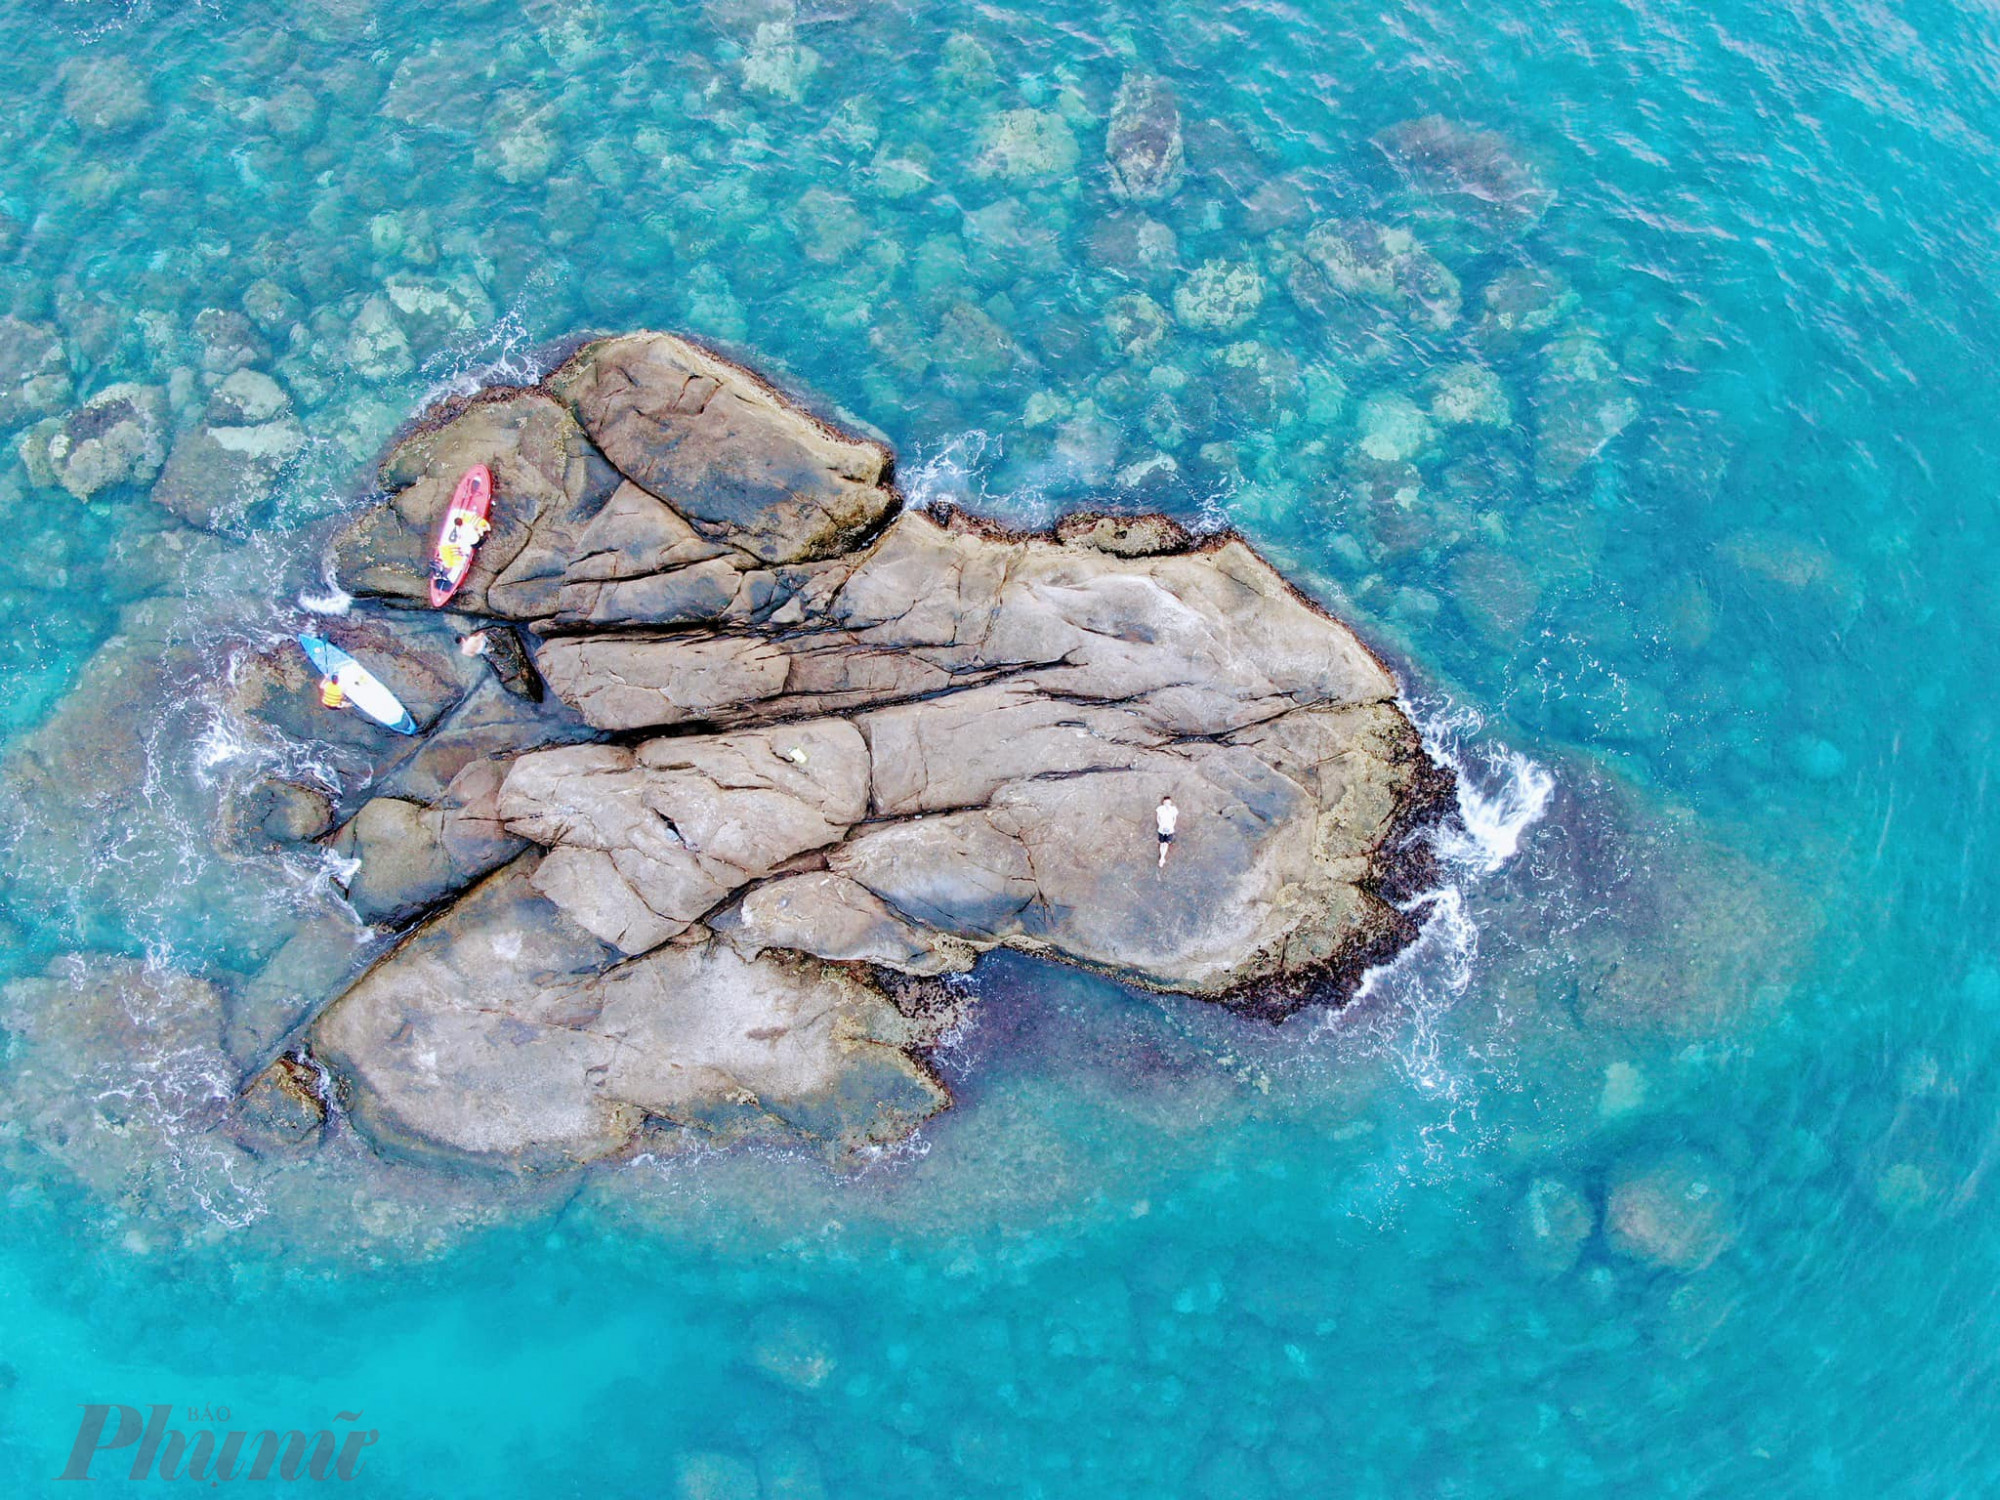 Hòn Sụp là một bãi đá ngầm nối dài từ chân của bán đảo Sơn Trà, nằm cách bờ biển Mân Thái khoảng hơn 1km với các rạn san hô rất đẹp. Với vị trí được che chở bởi bán đảo, sóng biển ở đây êm hơn và là điều kiện lý tưởng cho hoạt động bơi sup.